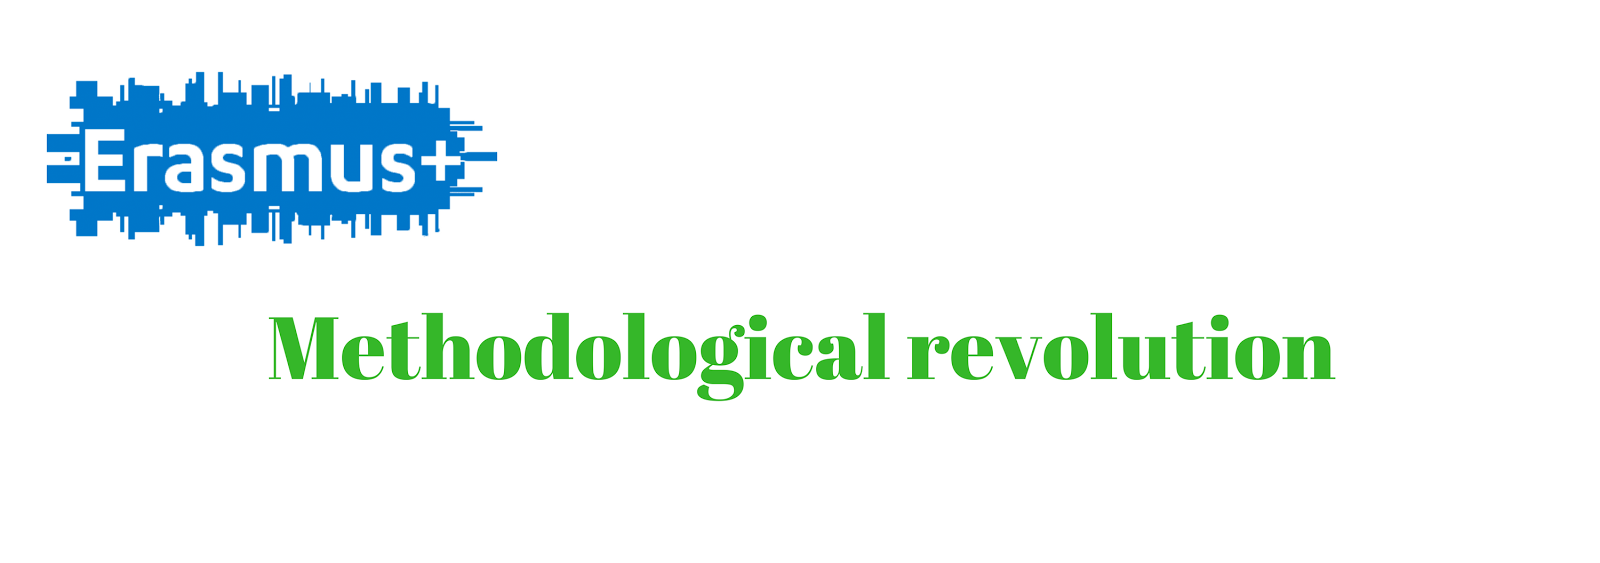 Revolución Metodológica